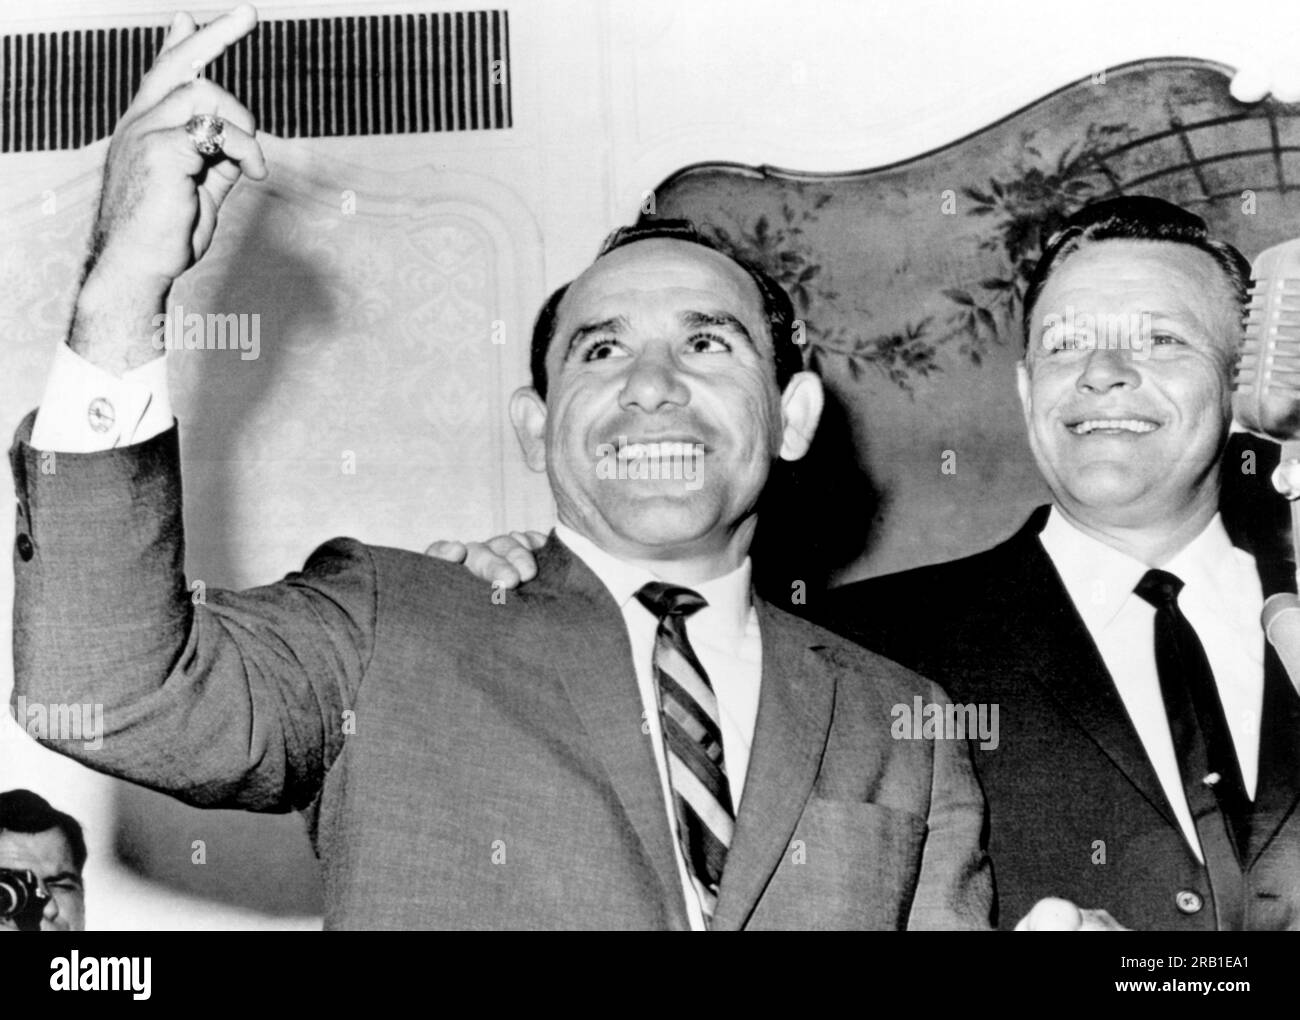 New York, New York : 24 octobre 1963 le Manager des New Yankees Yogi Berra clignote le signe de la victoire après avoir été nommé pour succéder à Ralph Houk (à droite) en tant que Manager des éternels champions de la Ligue américaine. Berra a immédiatement annoncé sa retraite en tant que joueur avec 358 home runs et un troupeau de records de la série mondiale. Banque D'Images